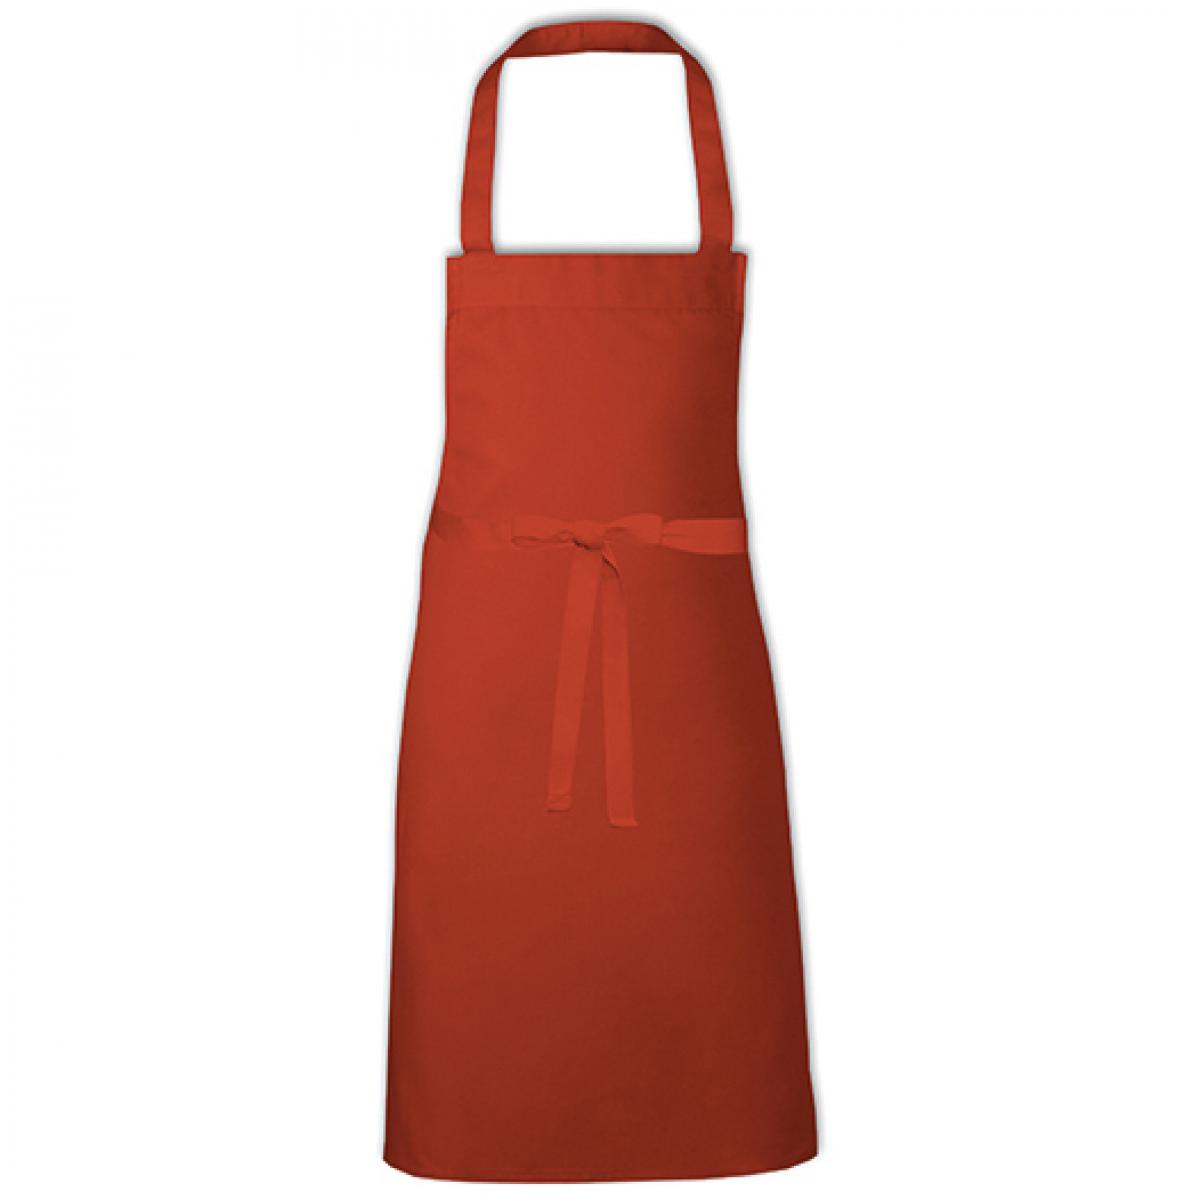 Hersteller: Link Kitchen Wear Herstellernummer: BBQ8073 Artikelbezeichnung: Barbecue Apron - 73 x 80 cm - Waschbar bis 60 °C Farbe: Terracotta (ca. Pantone 4840)